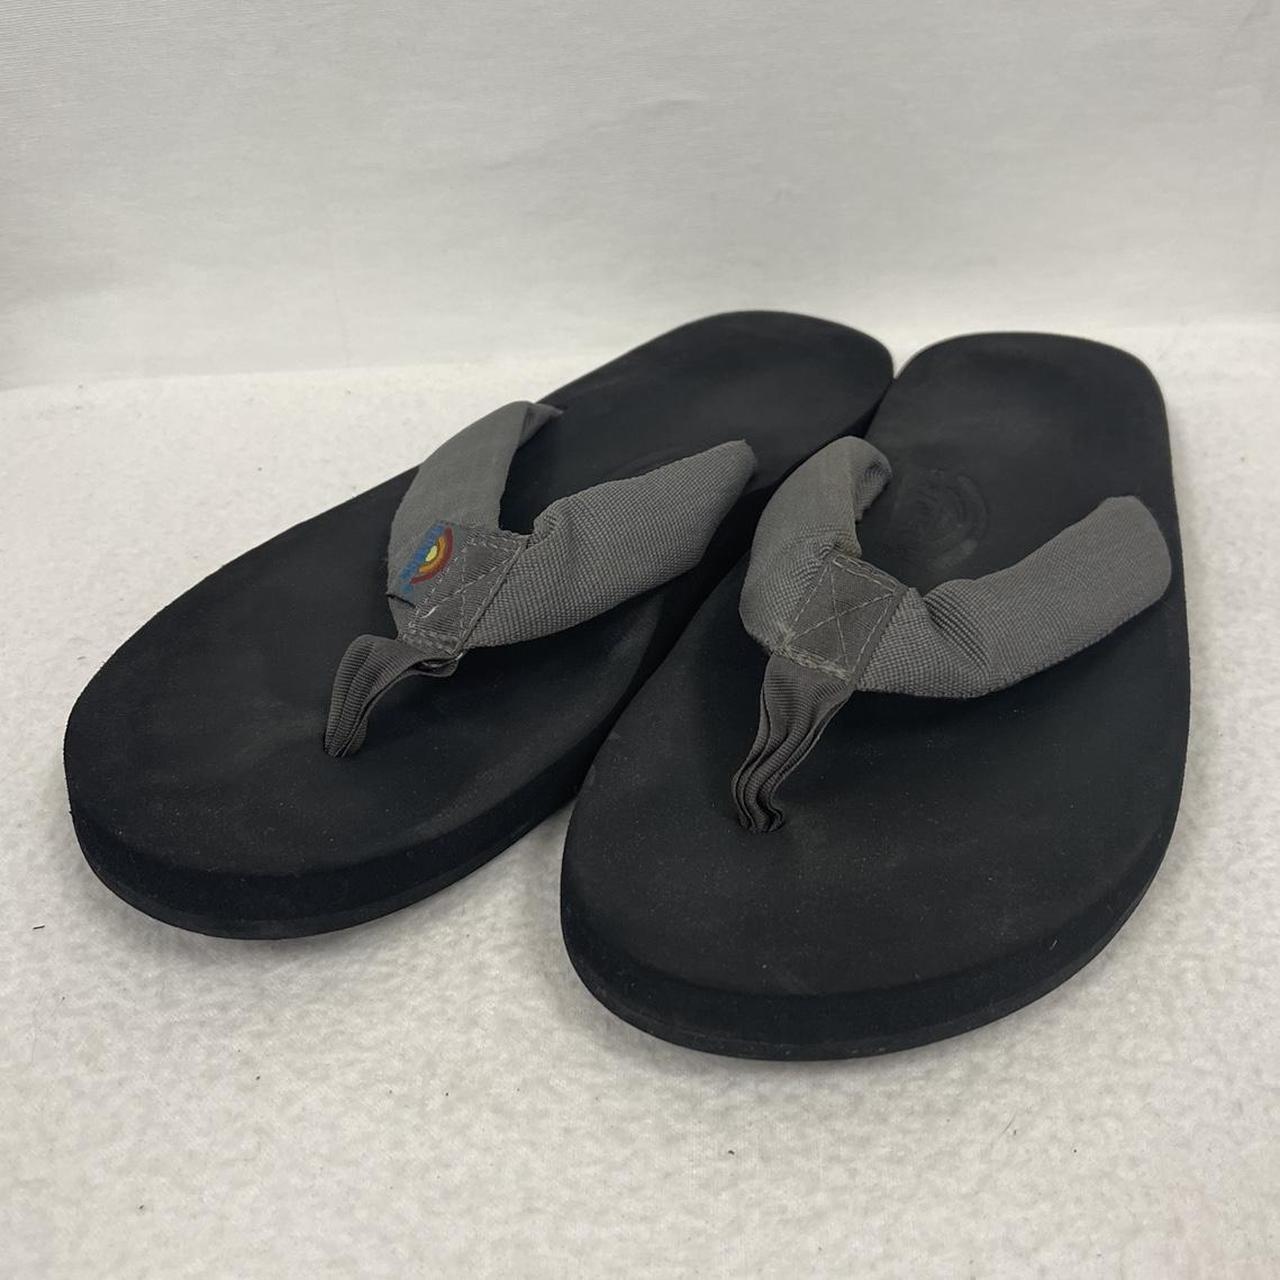 Buyr.com | Sandals | Rainbow Sandals Men's Premier Leather Double Layer  with Arch Wide Strap, Two Tone Black, Men's XXX-Large / 13.5-15 D(M) US